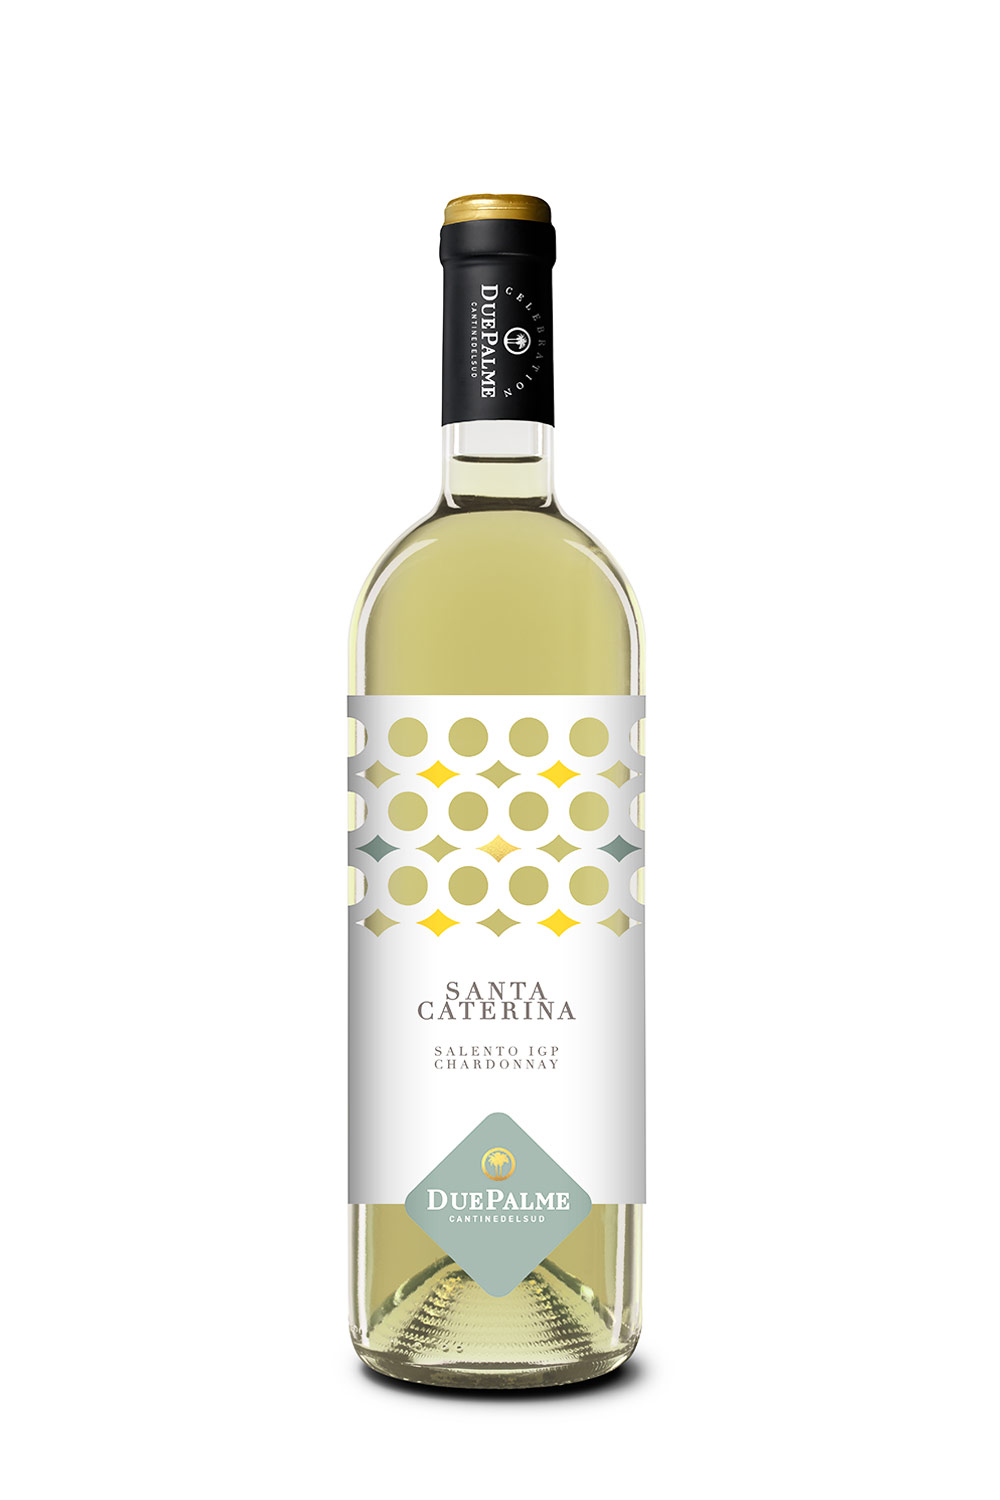 Cantine Due Palme Santa Caterina Chardonnay Salento IGP 2022 | Online  kaufen bei Senti Vini - Weine aus Italien